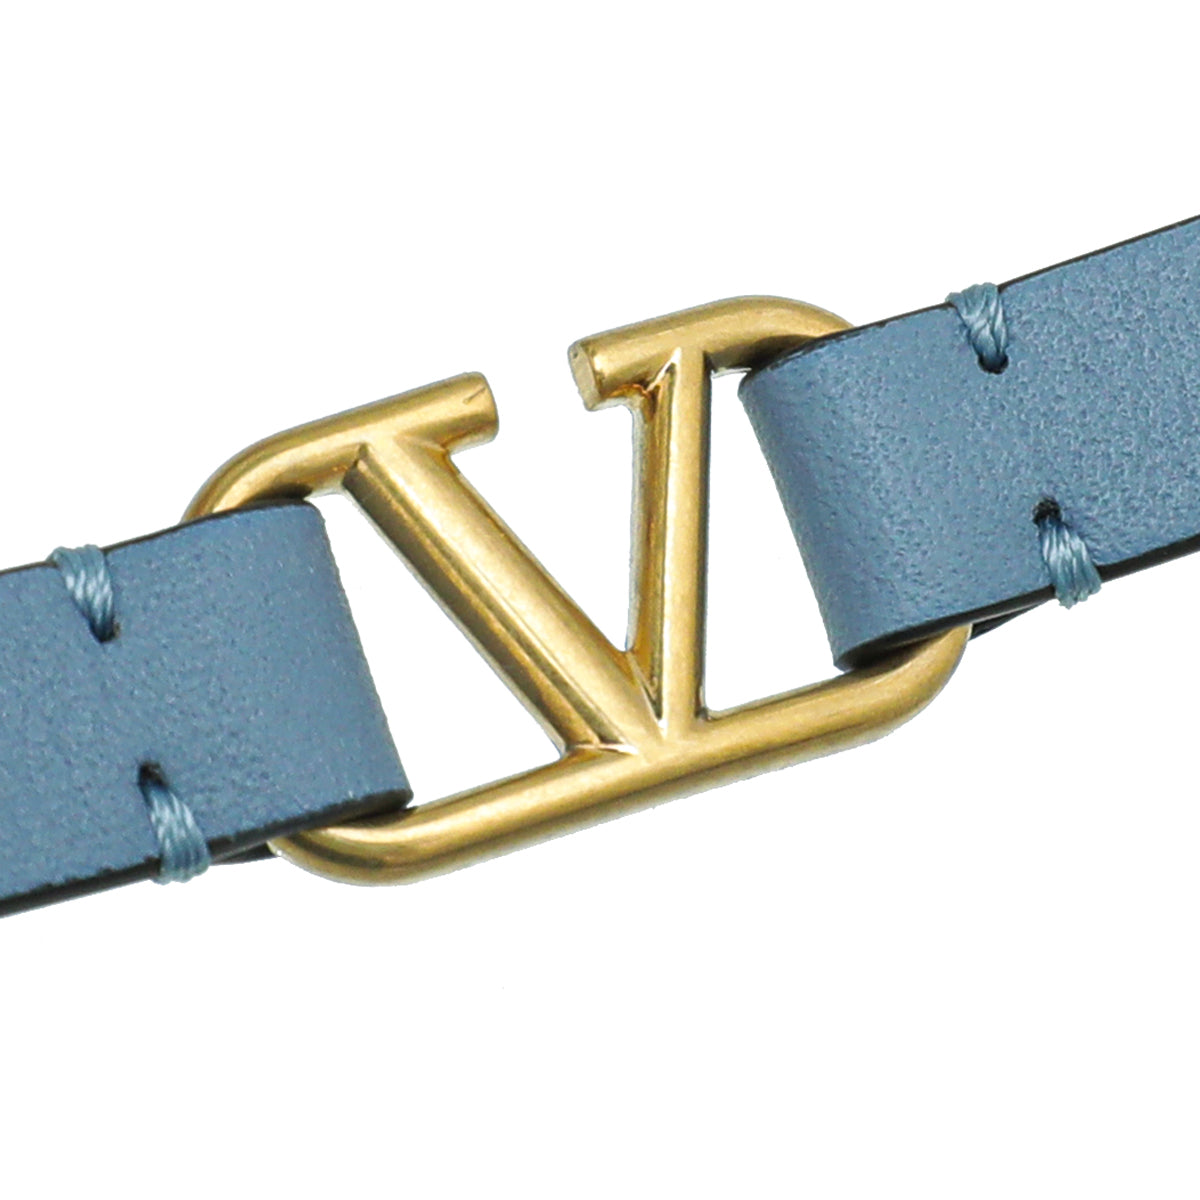 Valentino Grayish Blue VLogo Bracelet